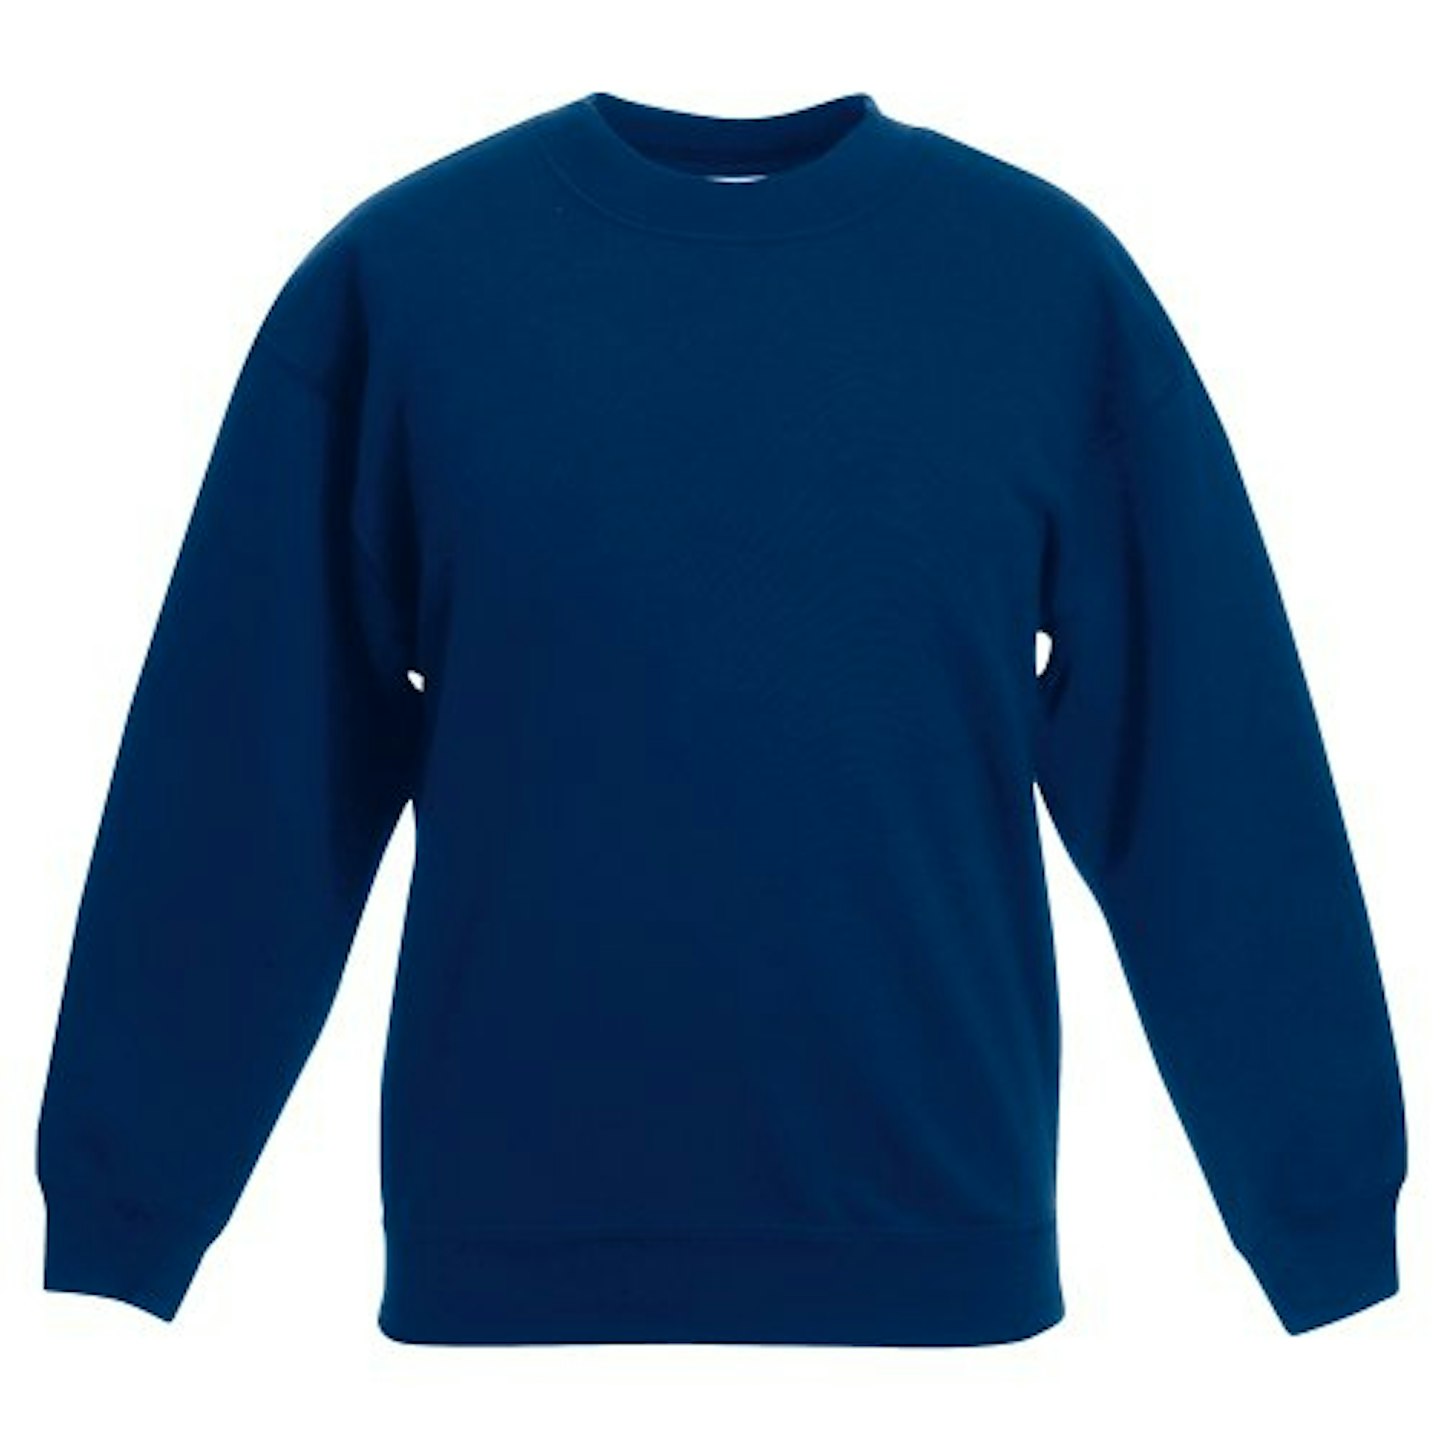 Best back to school uniform for primary school children Fruit of the Loom Kids Unisex Classic Sweatshirt